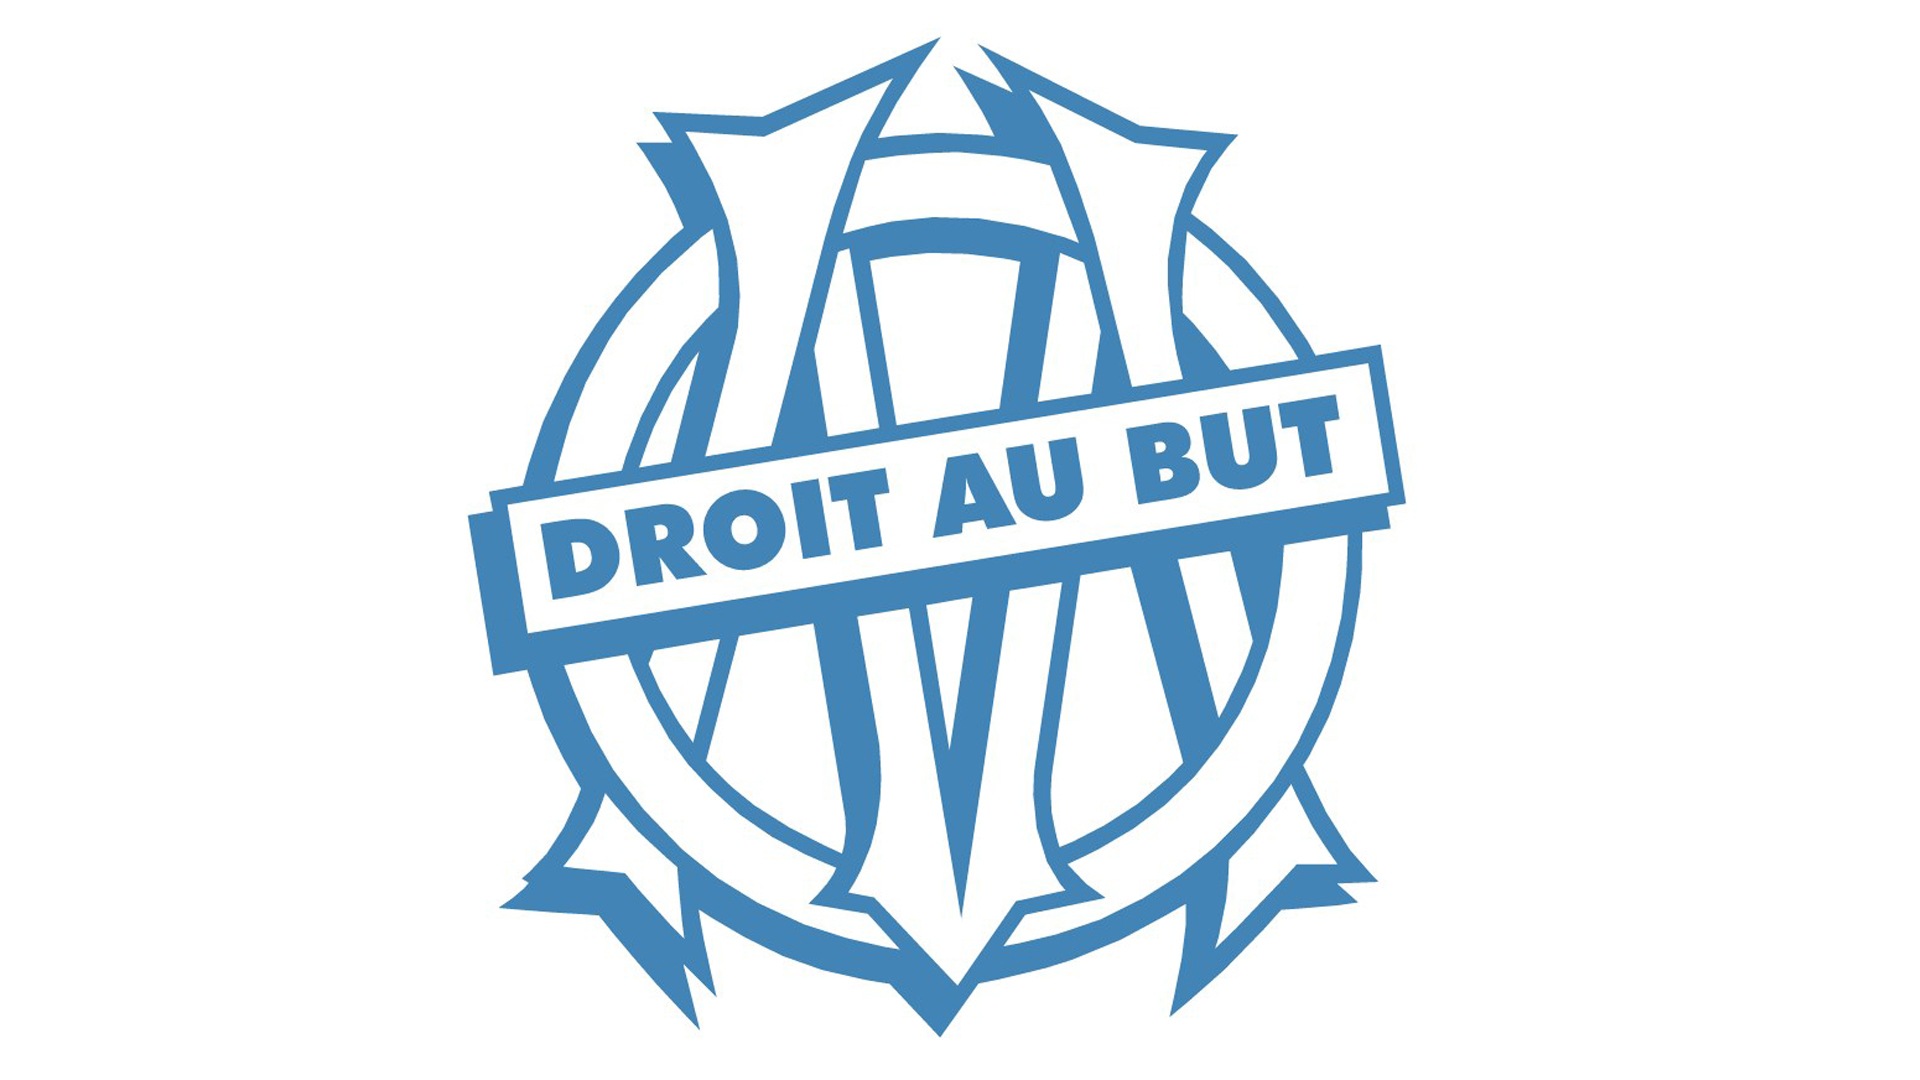 L'histoire du logo de l'Olympique de Marseille